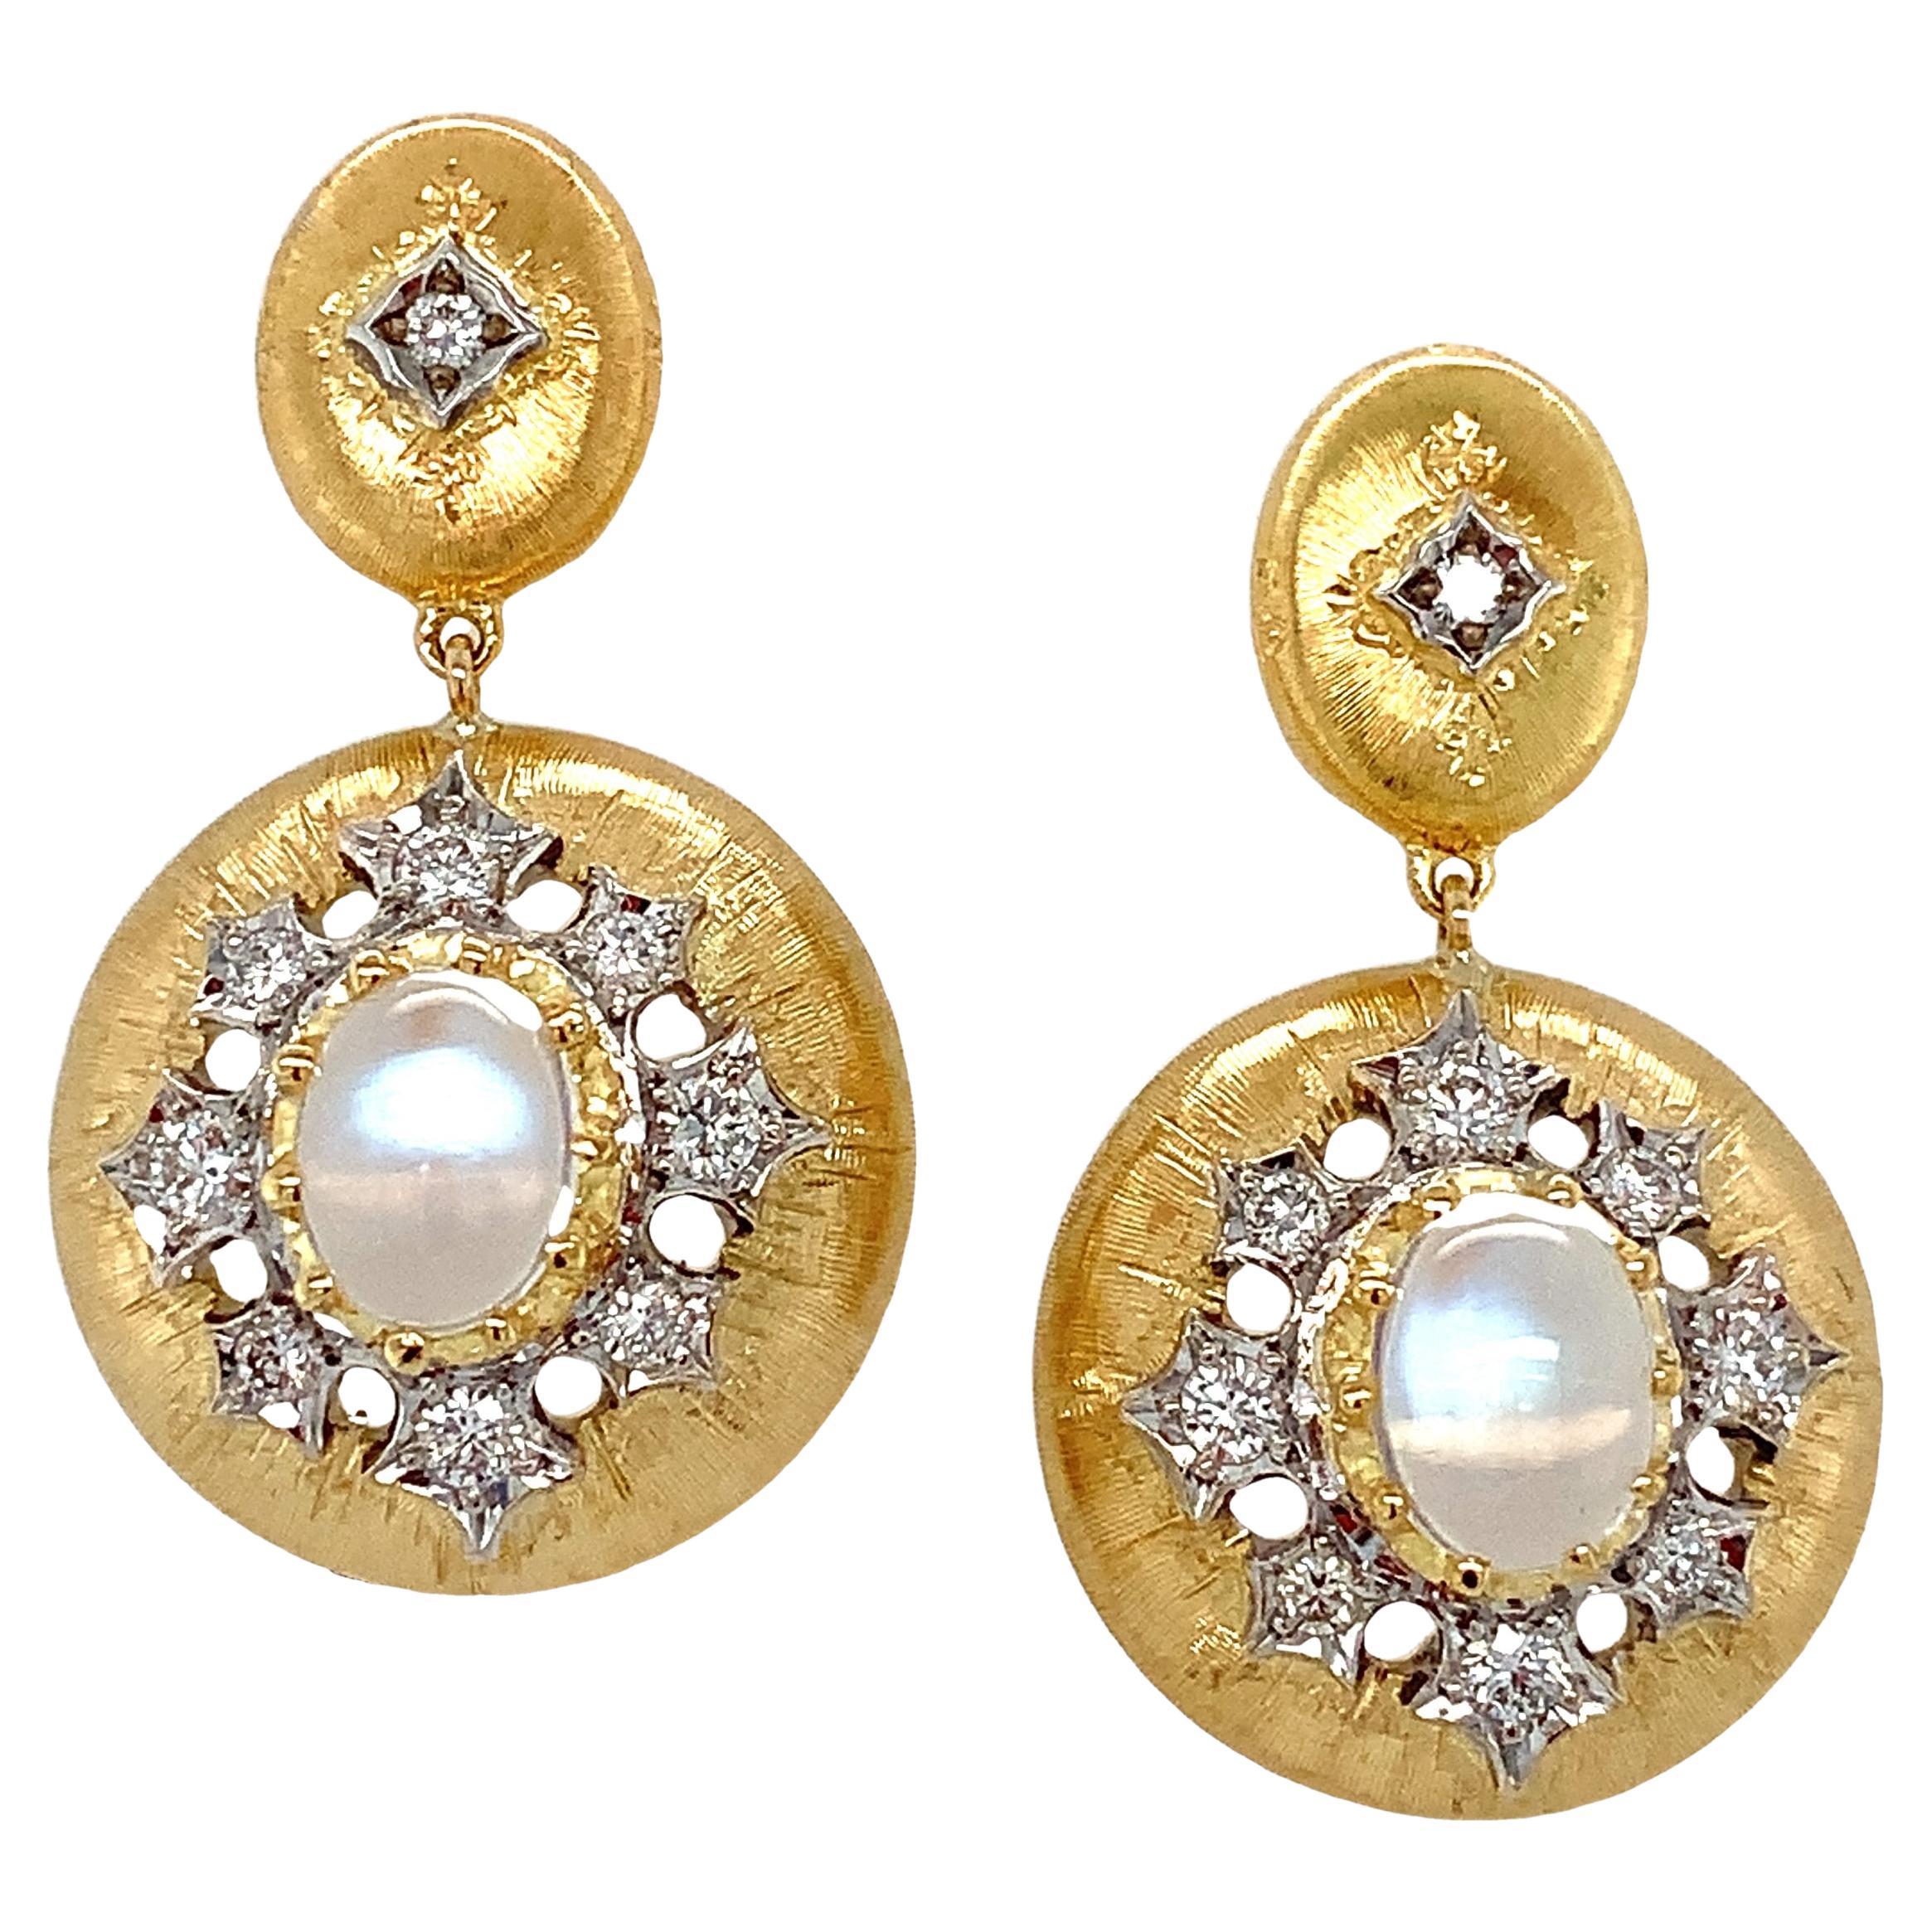 Boucles d'oreilles pendantes en or jaune, pierre de lune arc-en-ciel et diamant, design florentin